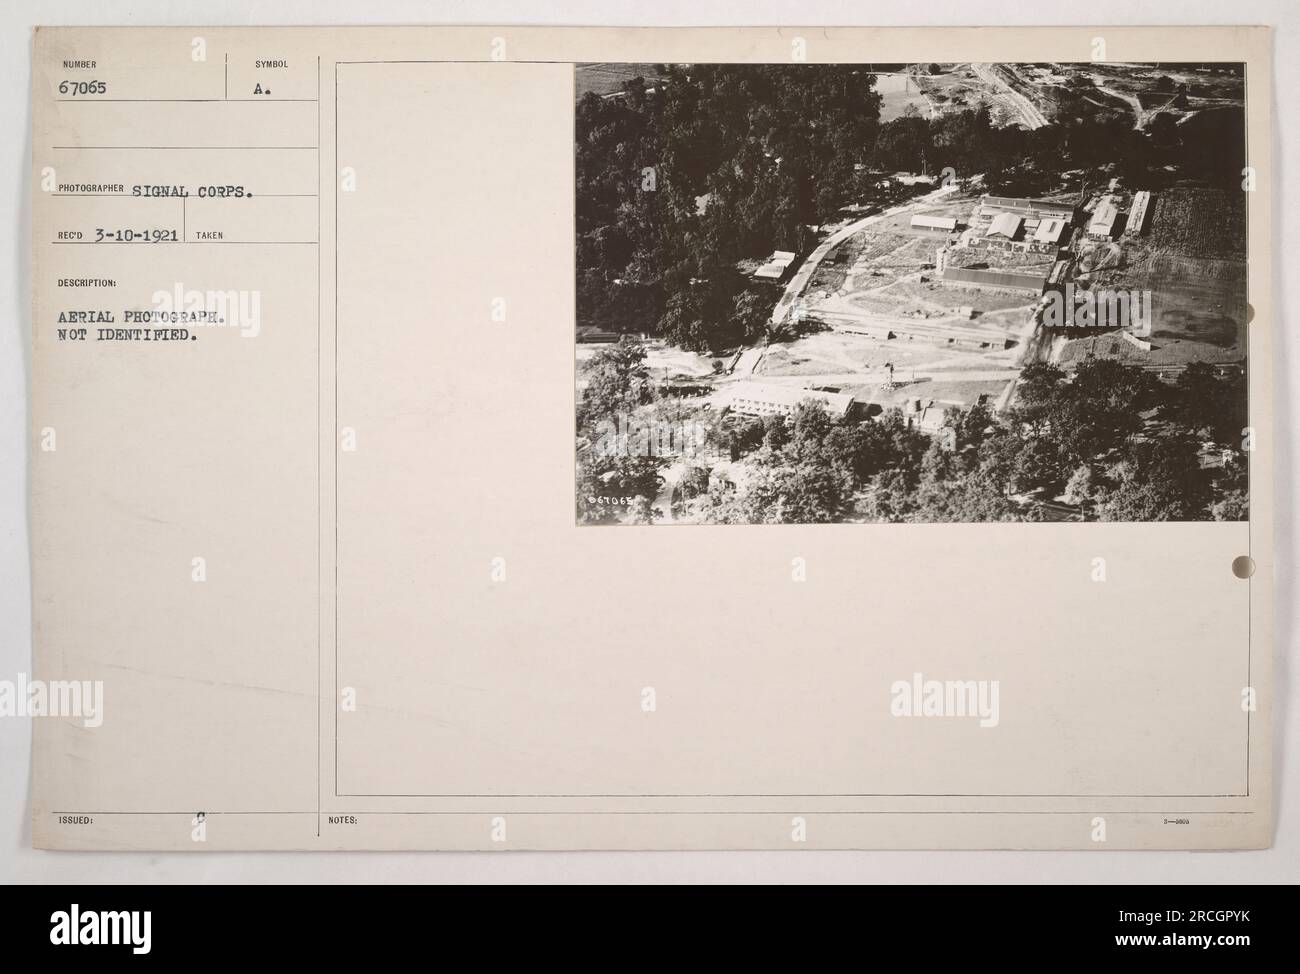 Luftaufnahme aus dem Ersten Weltkrieg, aufgenommen von einem Fotografen vom Signal Corps. Das Bild ist nicht identifiziert und mit Nummer 67065 gekennzeichnet. Das Foto wurde am 10. März 1921 aufgenommen. Ein mit dem Bild ausgegebenes Symbol ist mit „A“ gekennzeichnet. Stockfoto